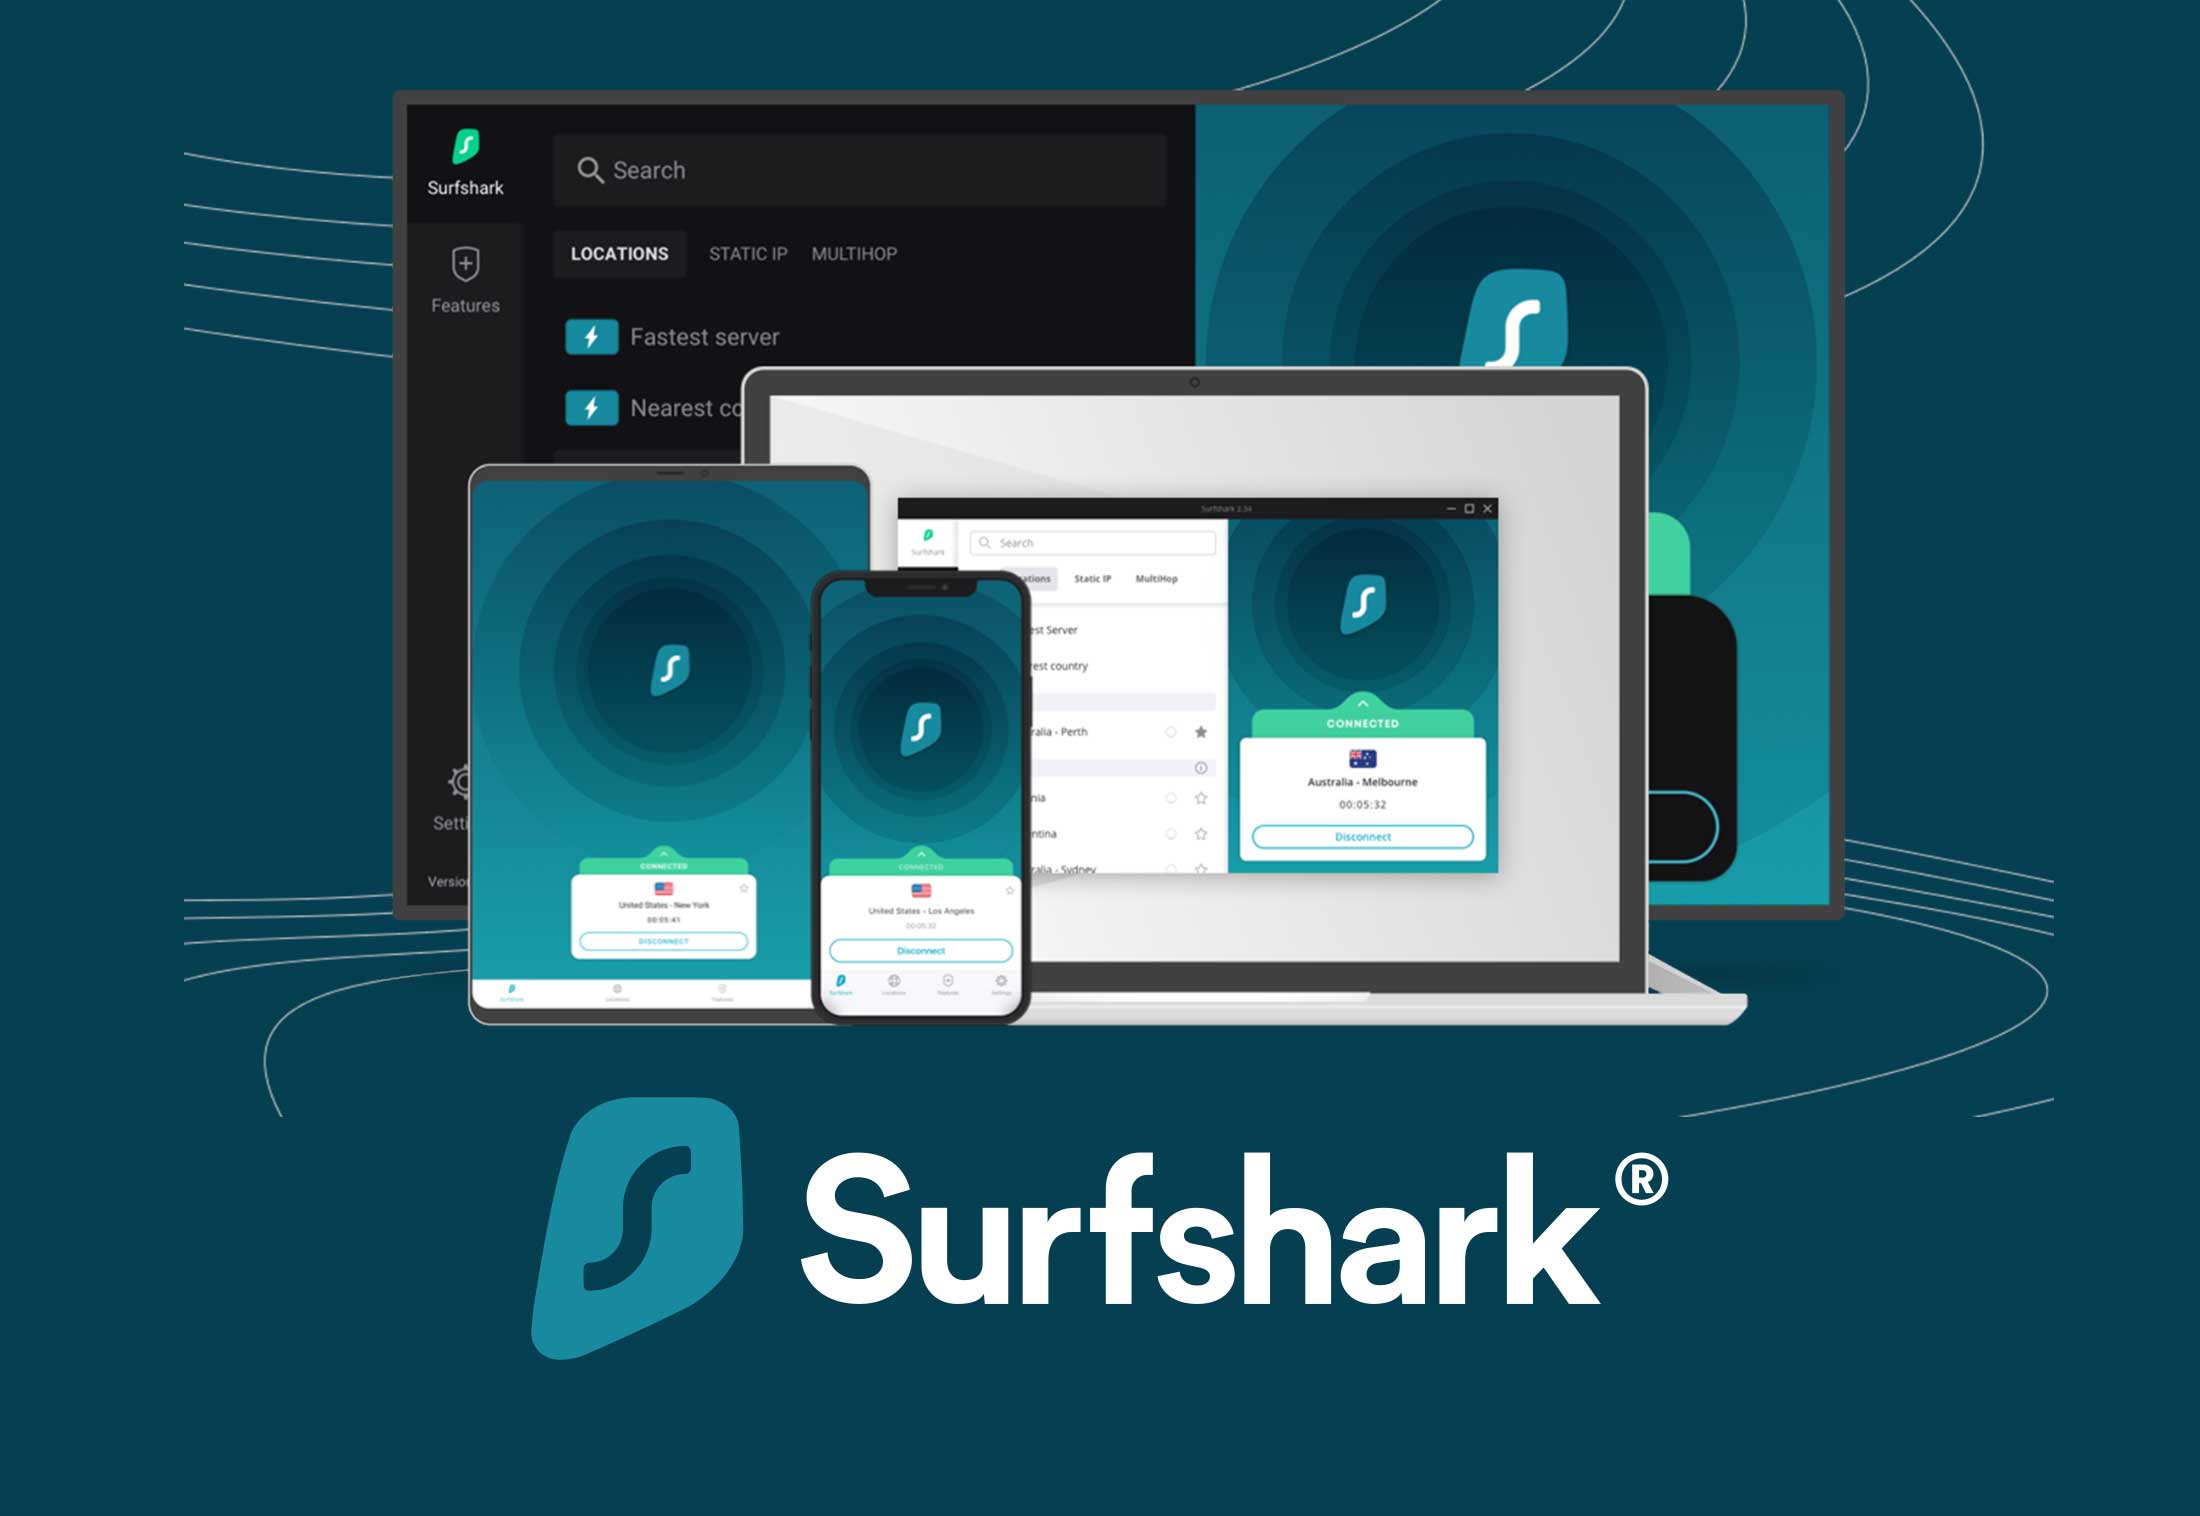 surfshark download windows